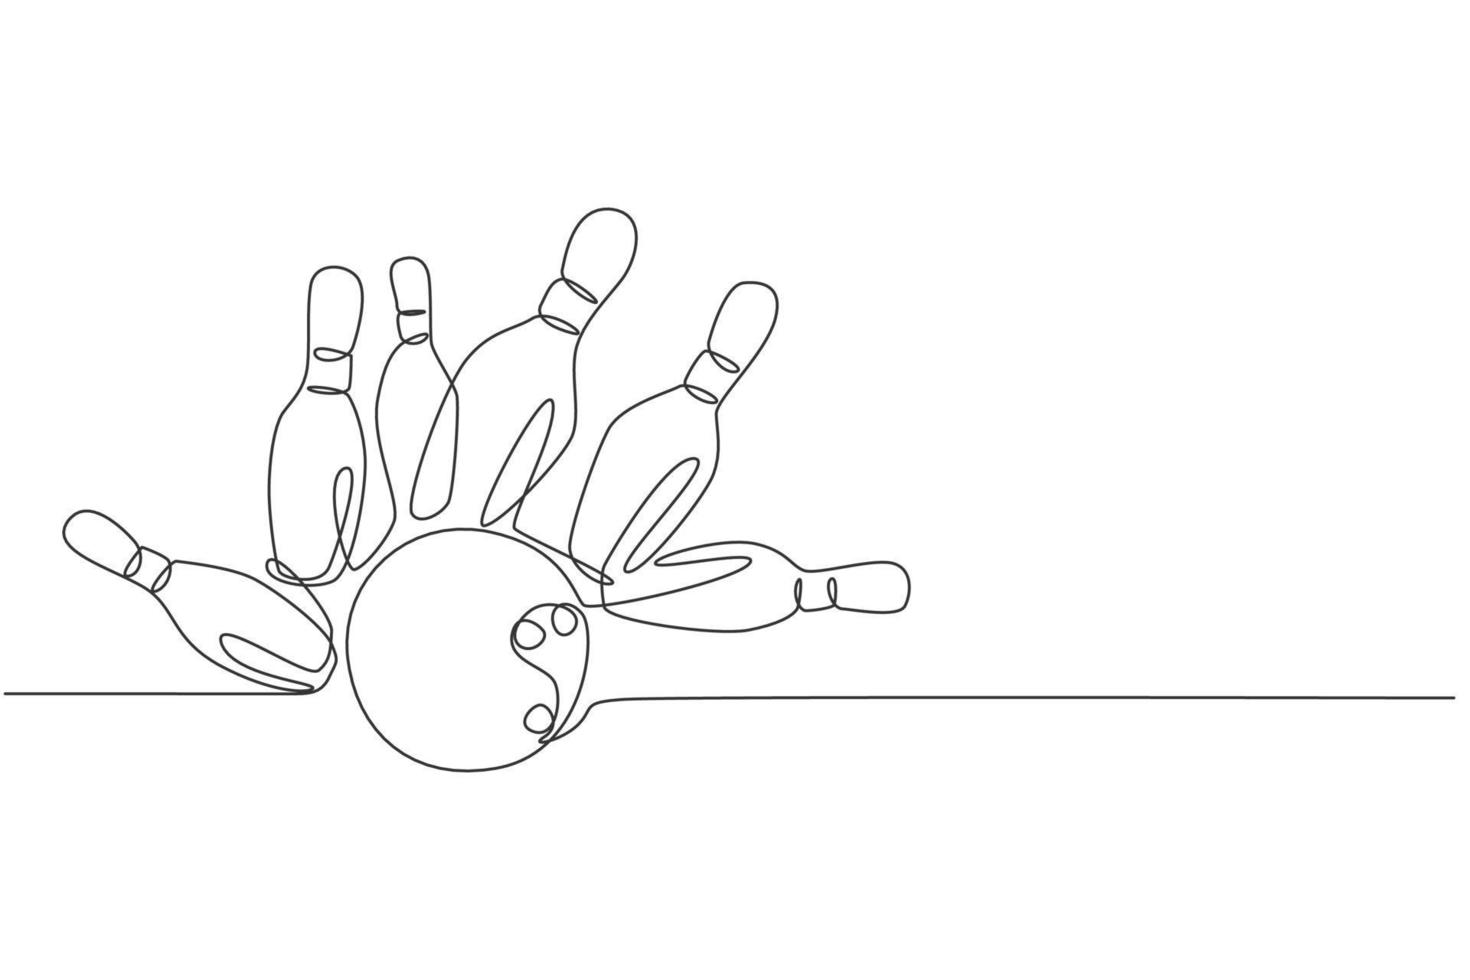 un seul dessin au trait de quilles de bowling qui s'effondrent frappé par une boule de bowling à l'illustration vectorielle graphique de la ruelle. activité de loisirs et concept de sport de jeu. conception moderne de dessin en ligne continue vecteur